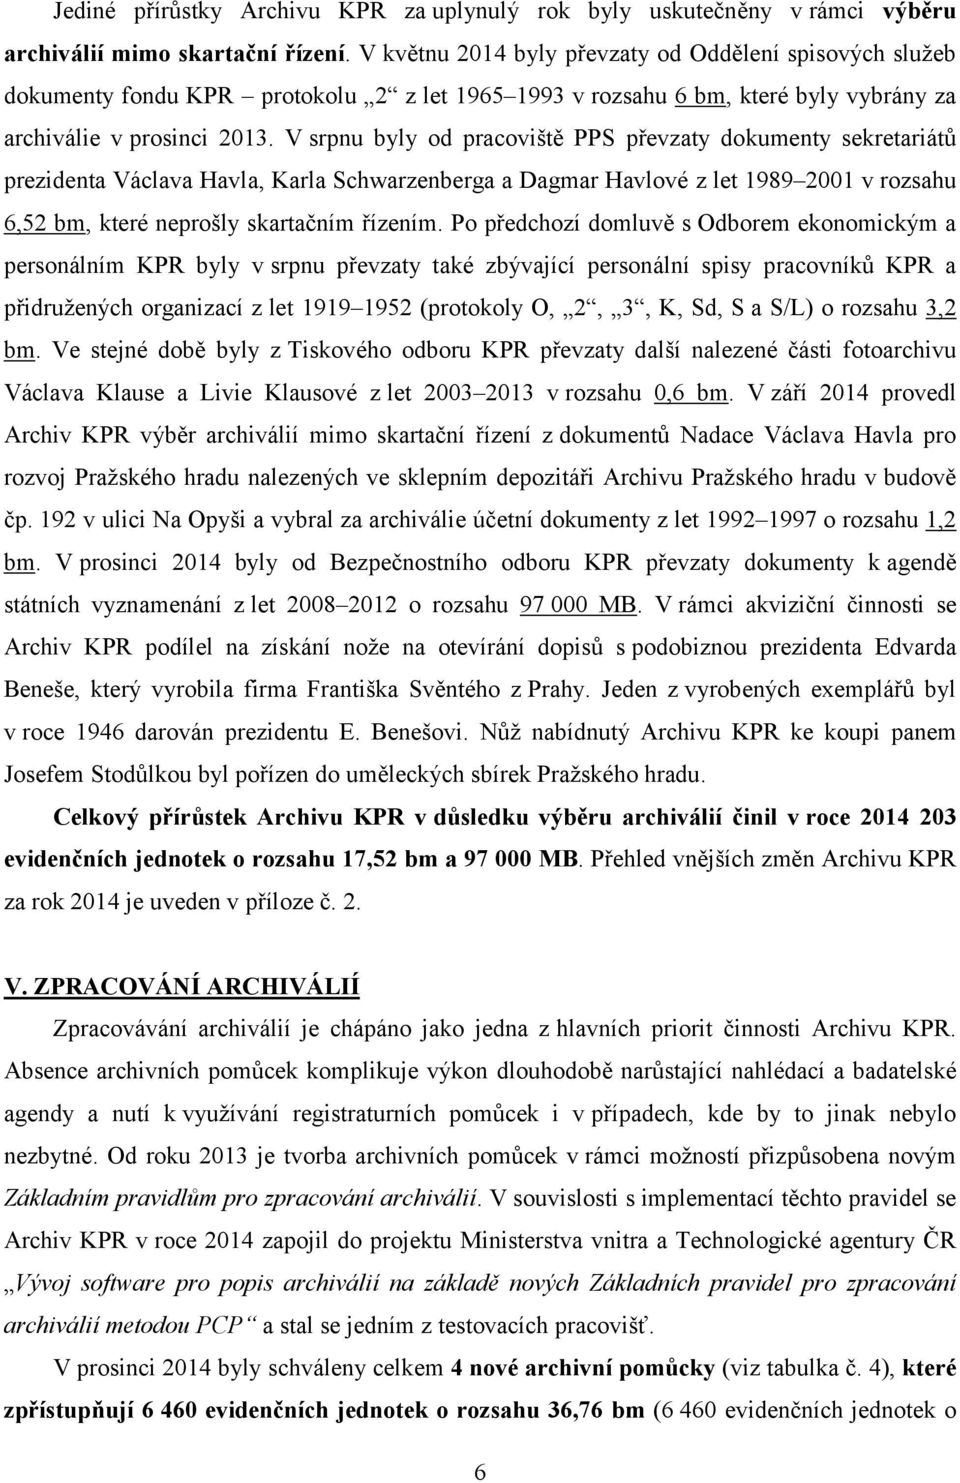 V srpnu byly od pracoviště PPS převzaty dokumenty sekretariátů prezidenta Václava Havla, Karla Schwarzenberga a Dagmar Havlové z let 1989 2001 v rozsahu 6,52 bm, které neprošly skartačním řízením.